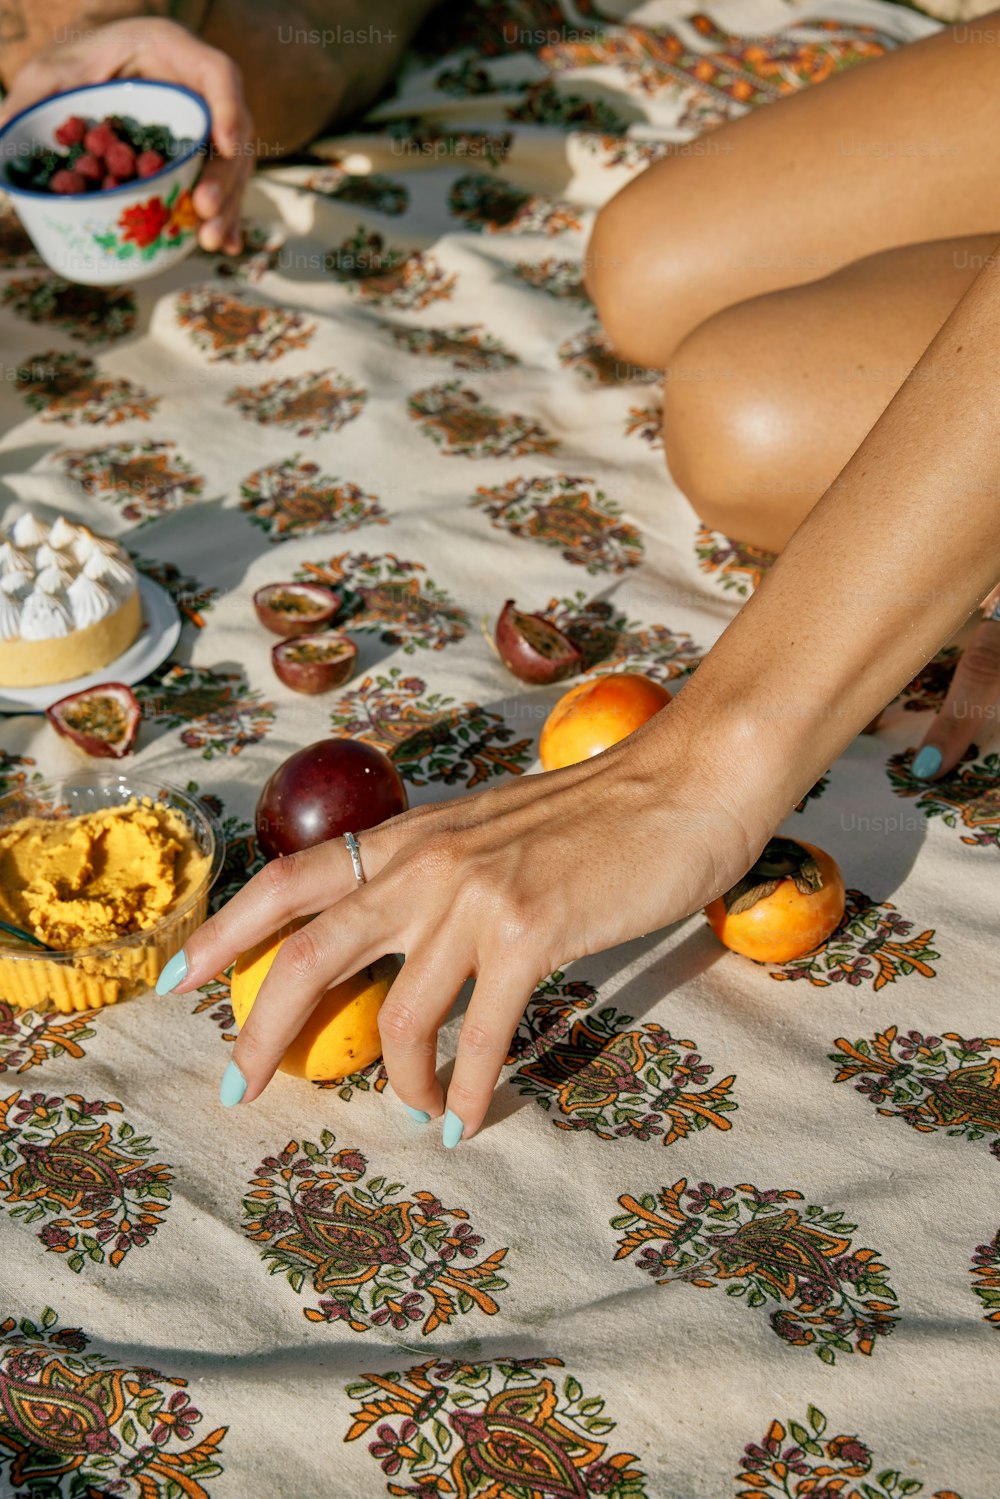 Una mujer sentada en una cama con un tazón de fruta